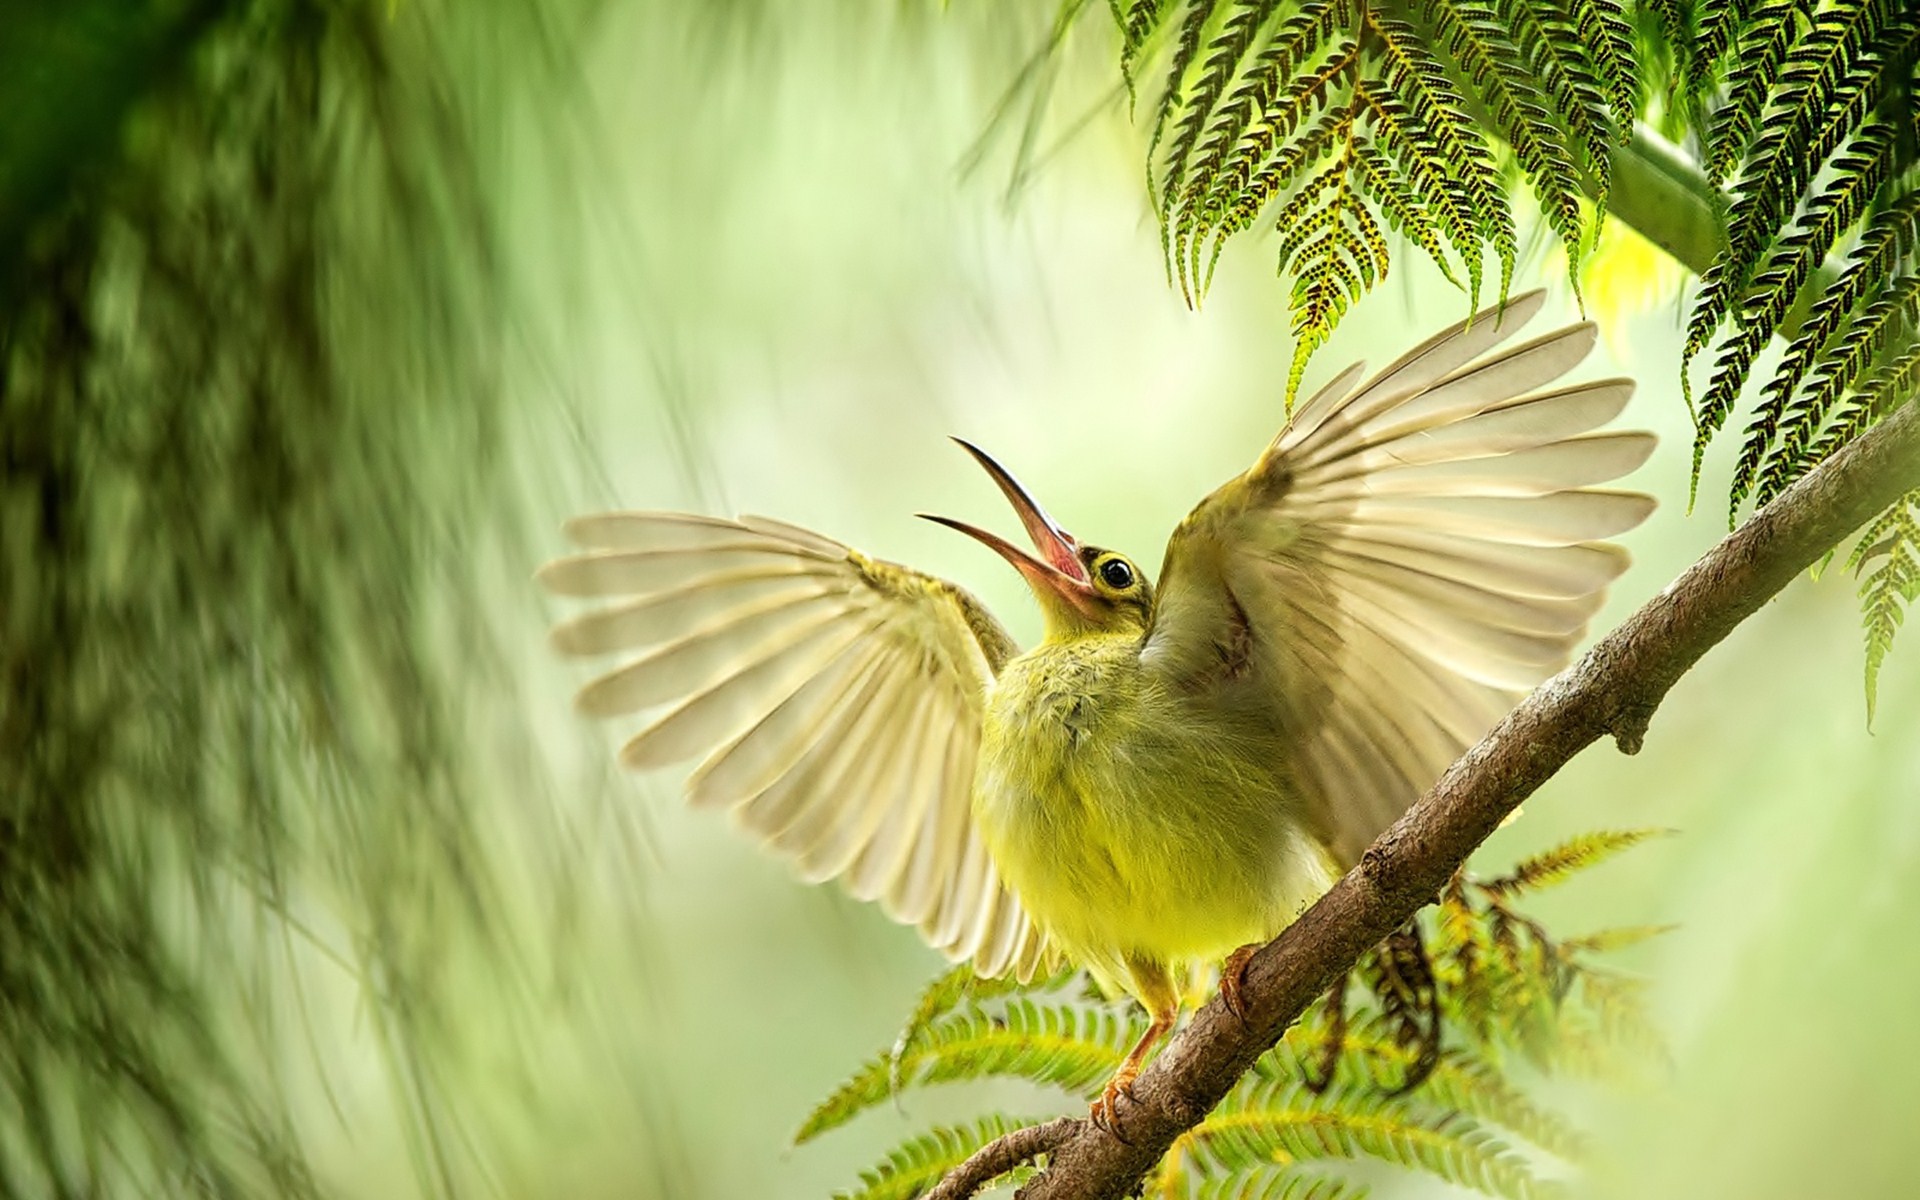 Chim Sẻ - loài chim có mặt khắp mọi nơi. Những hình ảnh ngộ nghĩnh qua tay  nhiếp ảnh | Học viện media - duduxanh.com